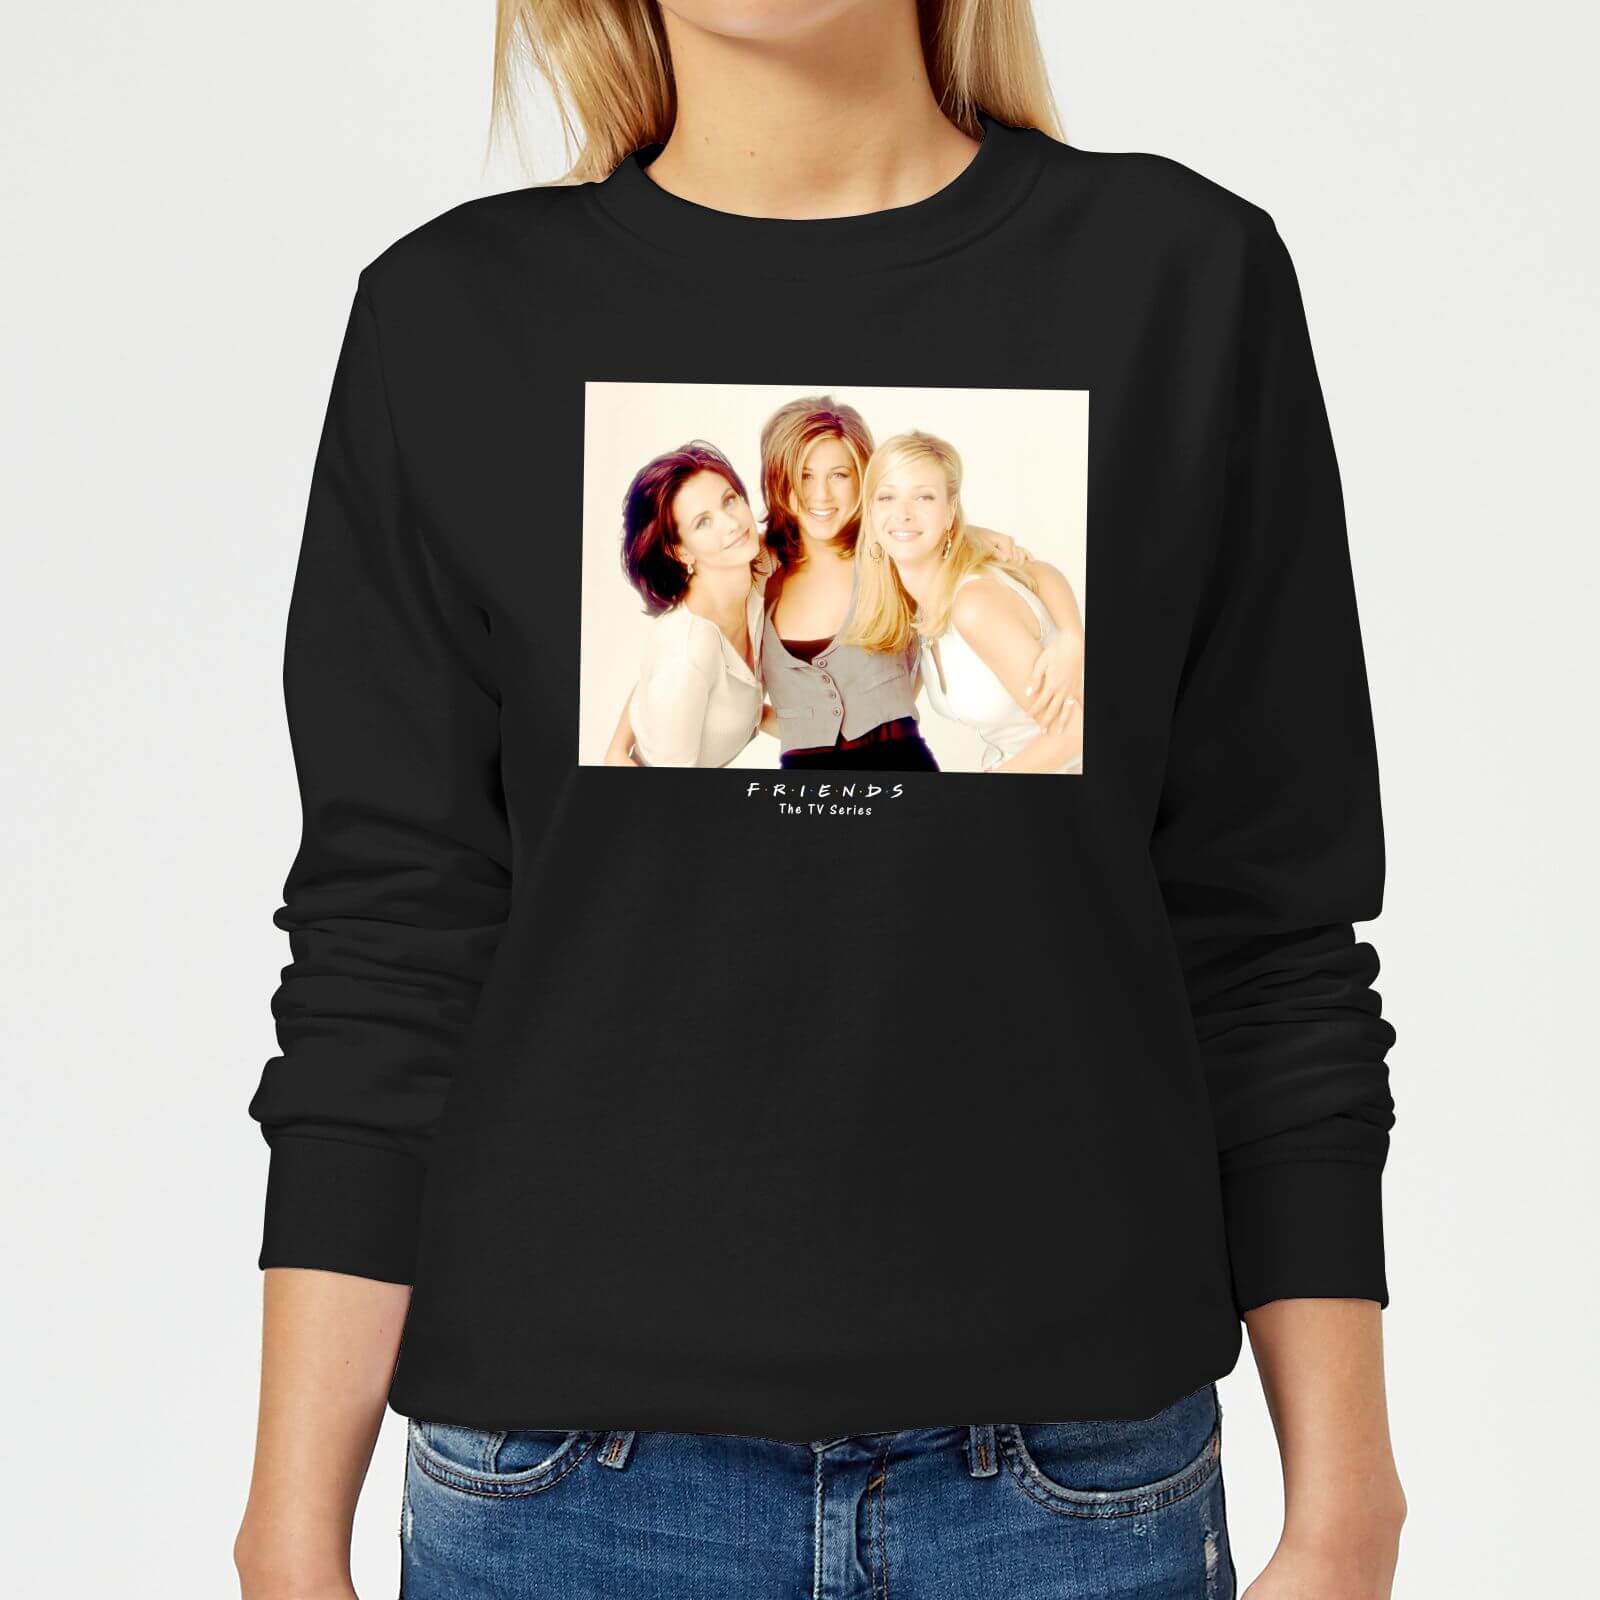 Friends Girls Women's Sweatshirt - Black - XS - Black